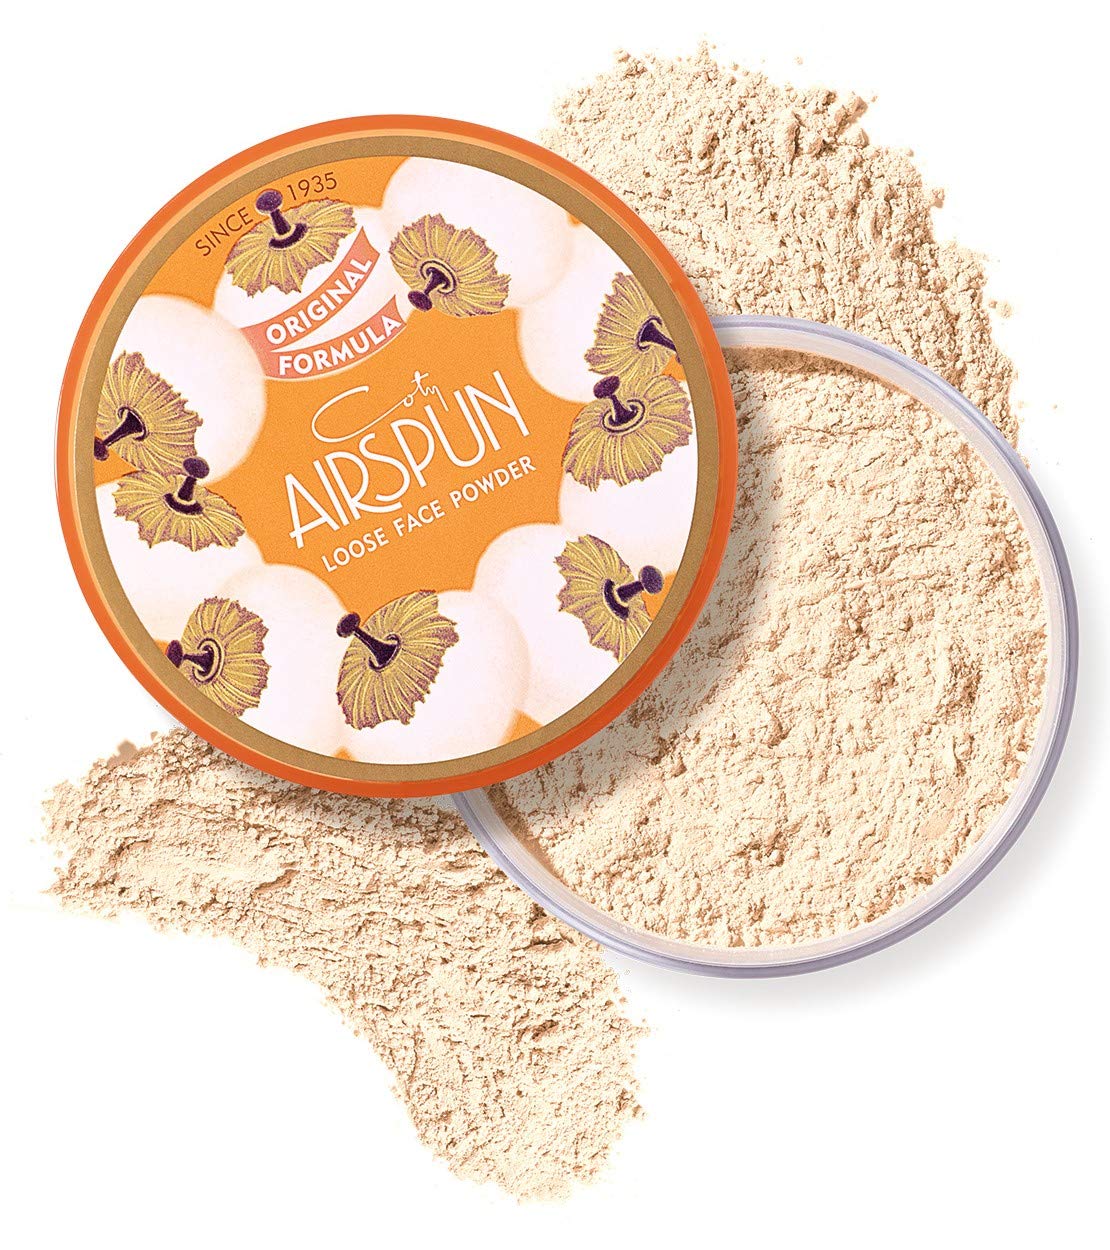 Coty Airspun Loose Face Powder, Honey Beige 65G - Highfy.pk